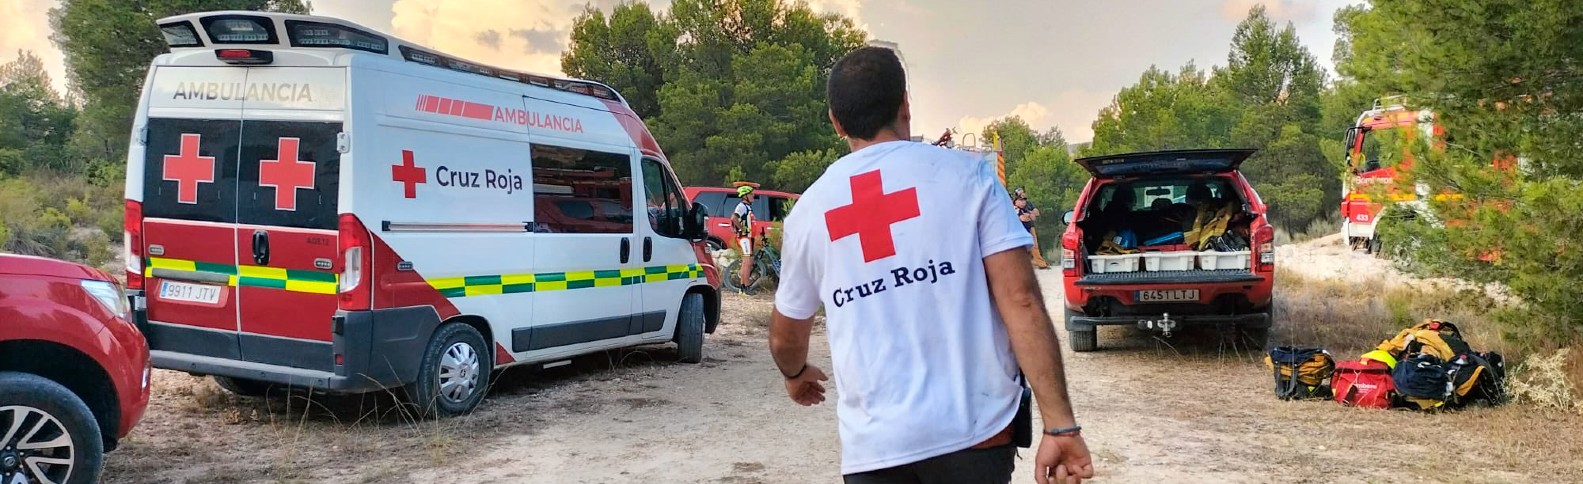 Cruz Roja ya ha atendido a más de 11.500 personas en los incendios forestales de este verano